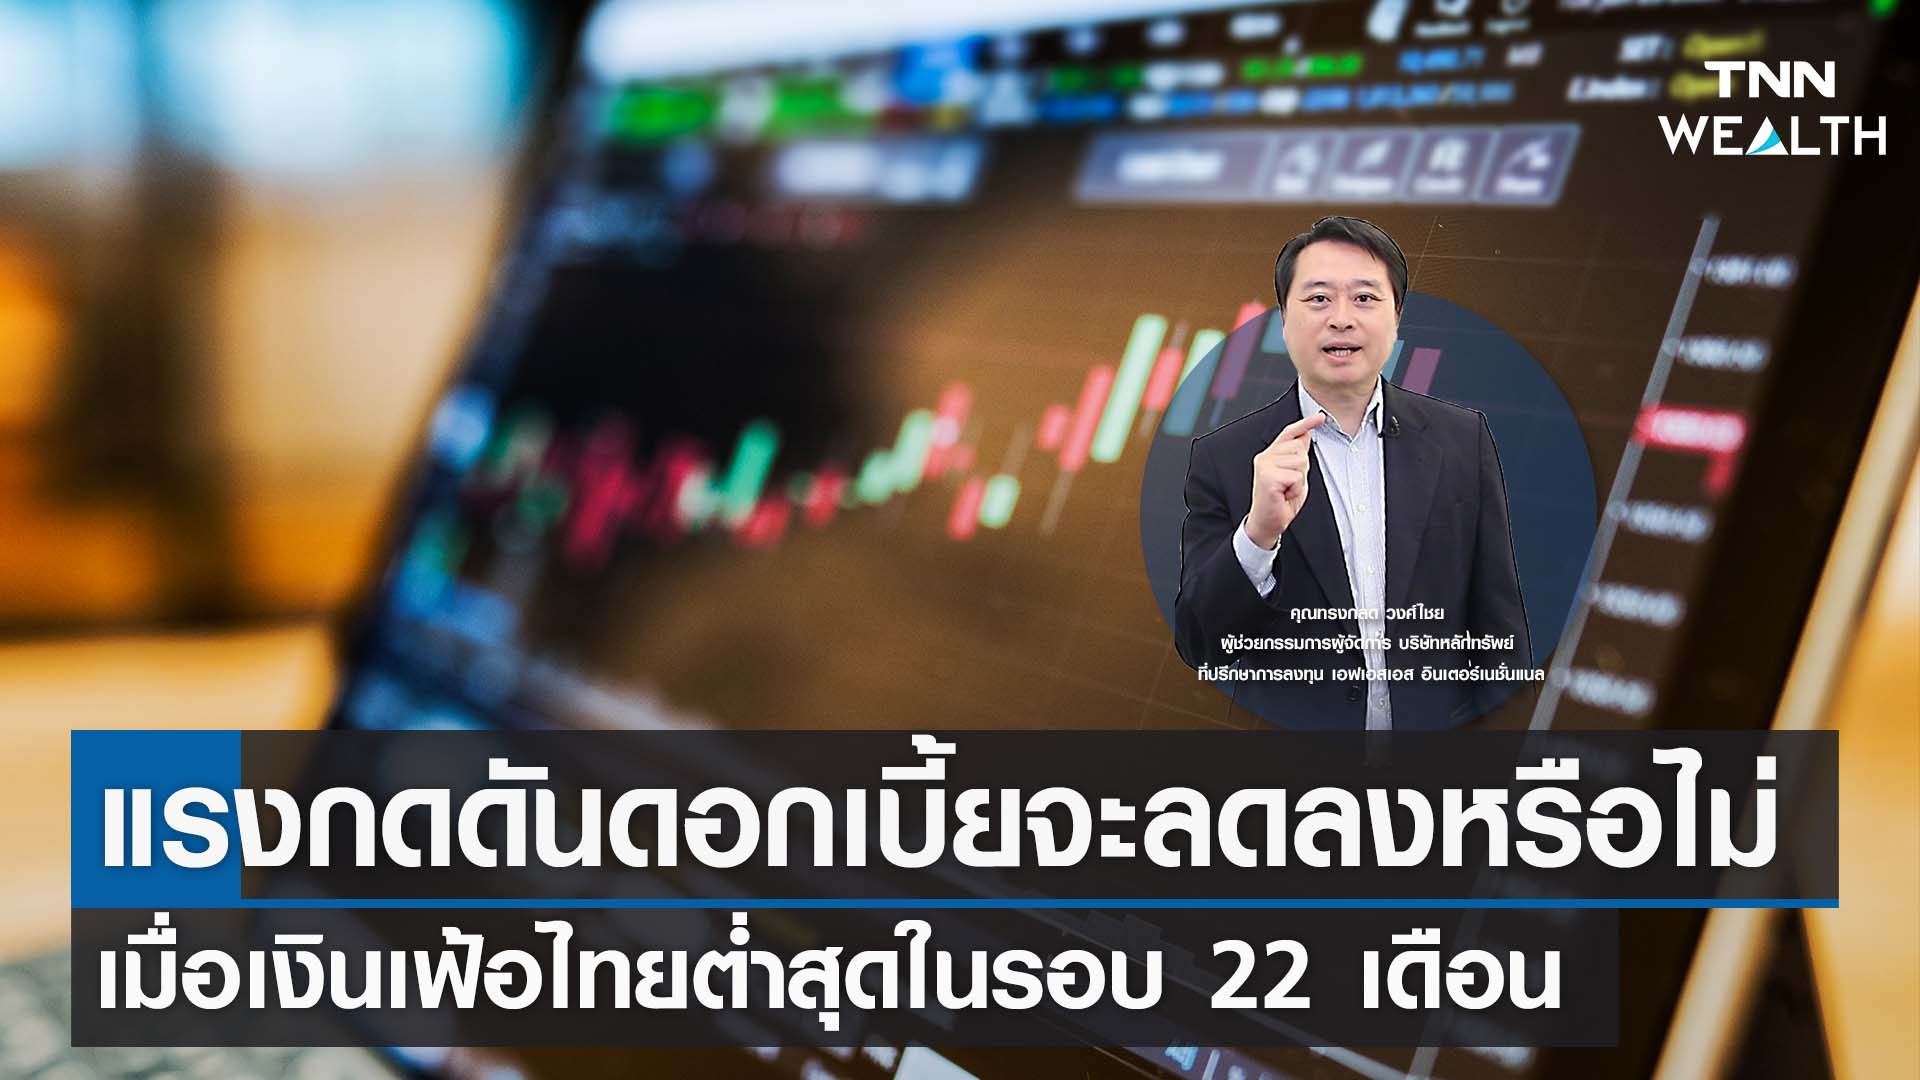 แรงกดดันดอกเบี้ยจะลดลงหรือไม่ เมื่อเงินเฟ้อไทยต่ำสุดในรอบ 22 เดือน I TNN WEALTH 6 ก.ค. 66